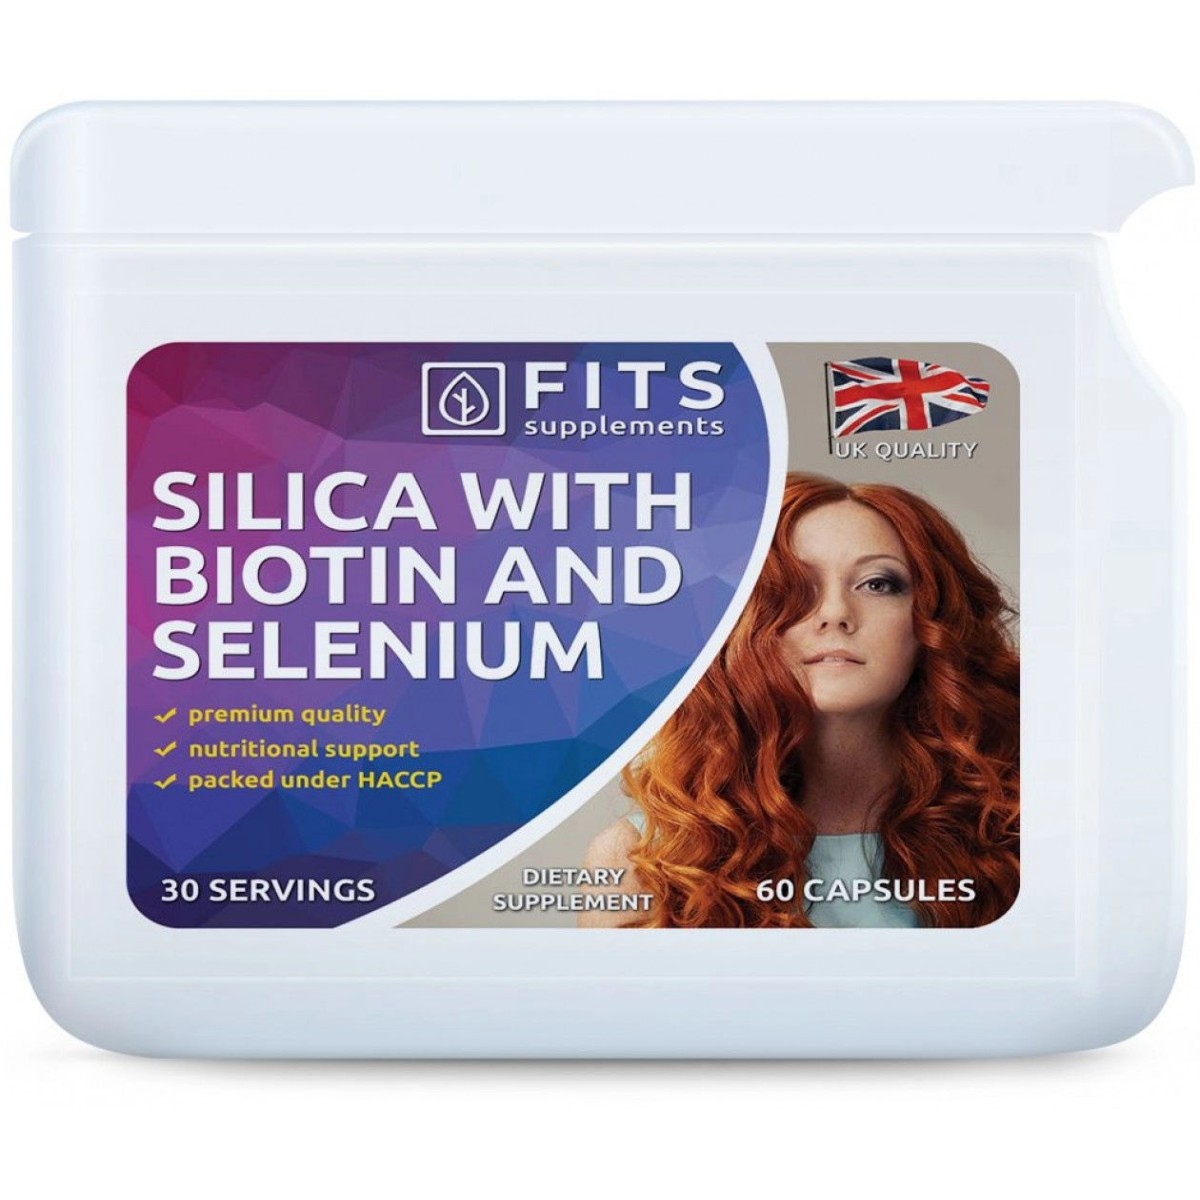 Nutricosmética - Suplementos al mejor precio: Silice con Biotina y Selenio capsulas de FITS Supplements en Skin Thinks - Tratamiento Anti-Edad